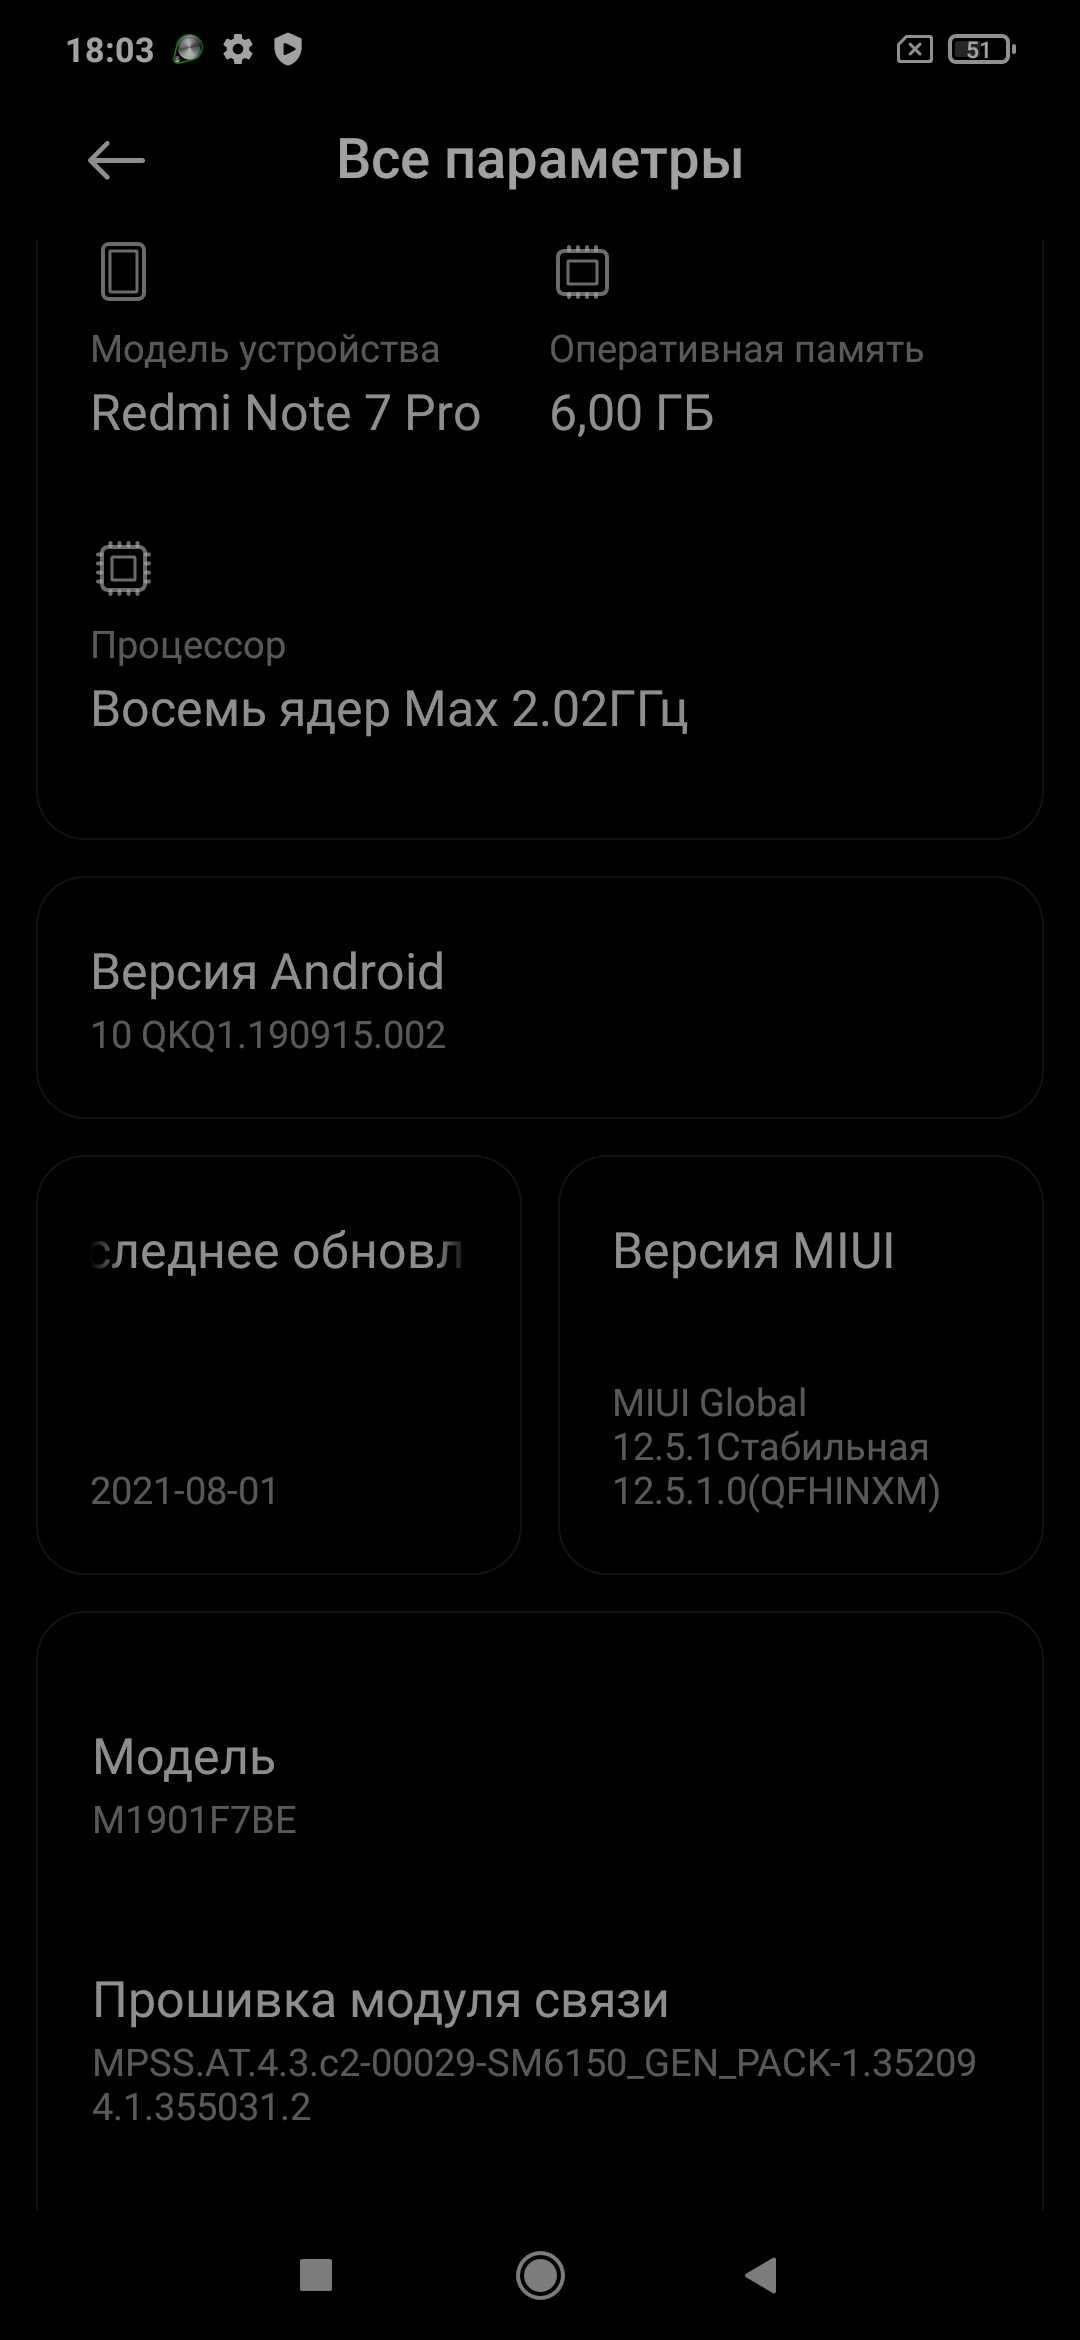 Xiaomi Redmi Note 7 Pro 6/128GB Black